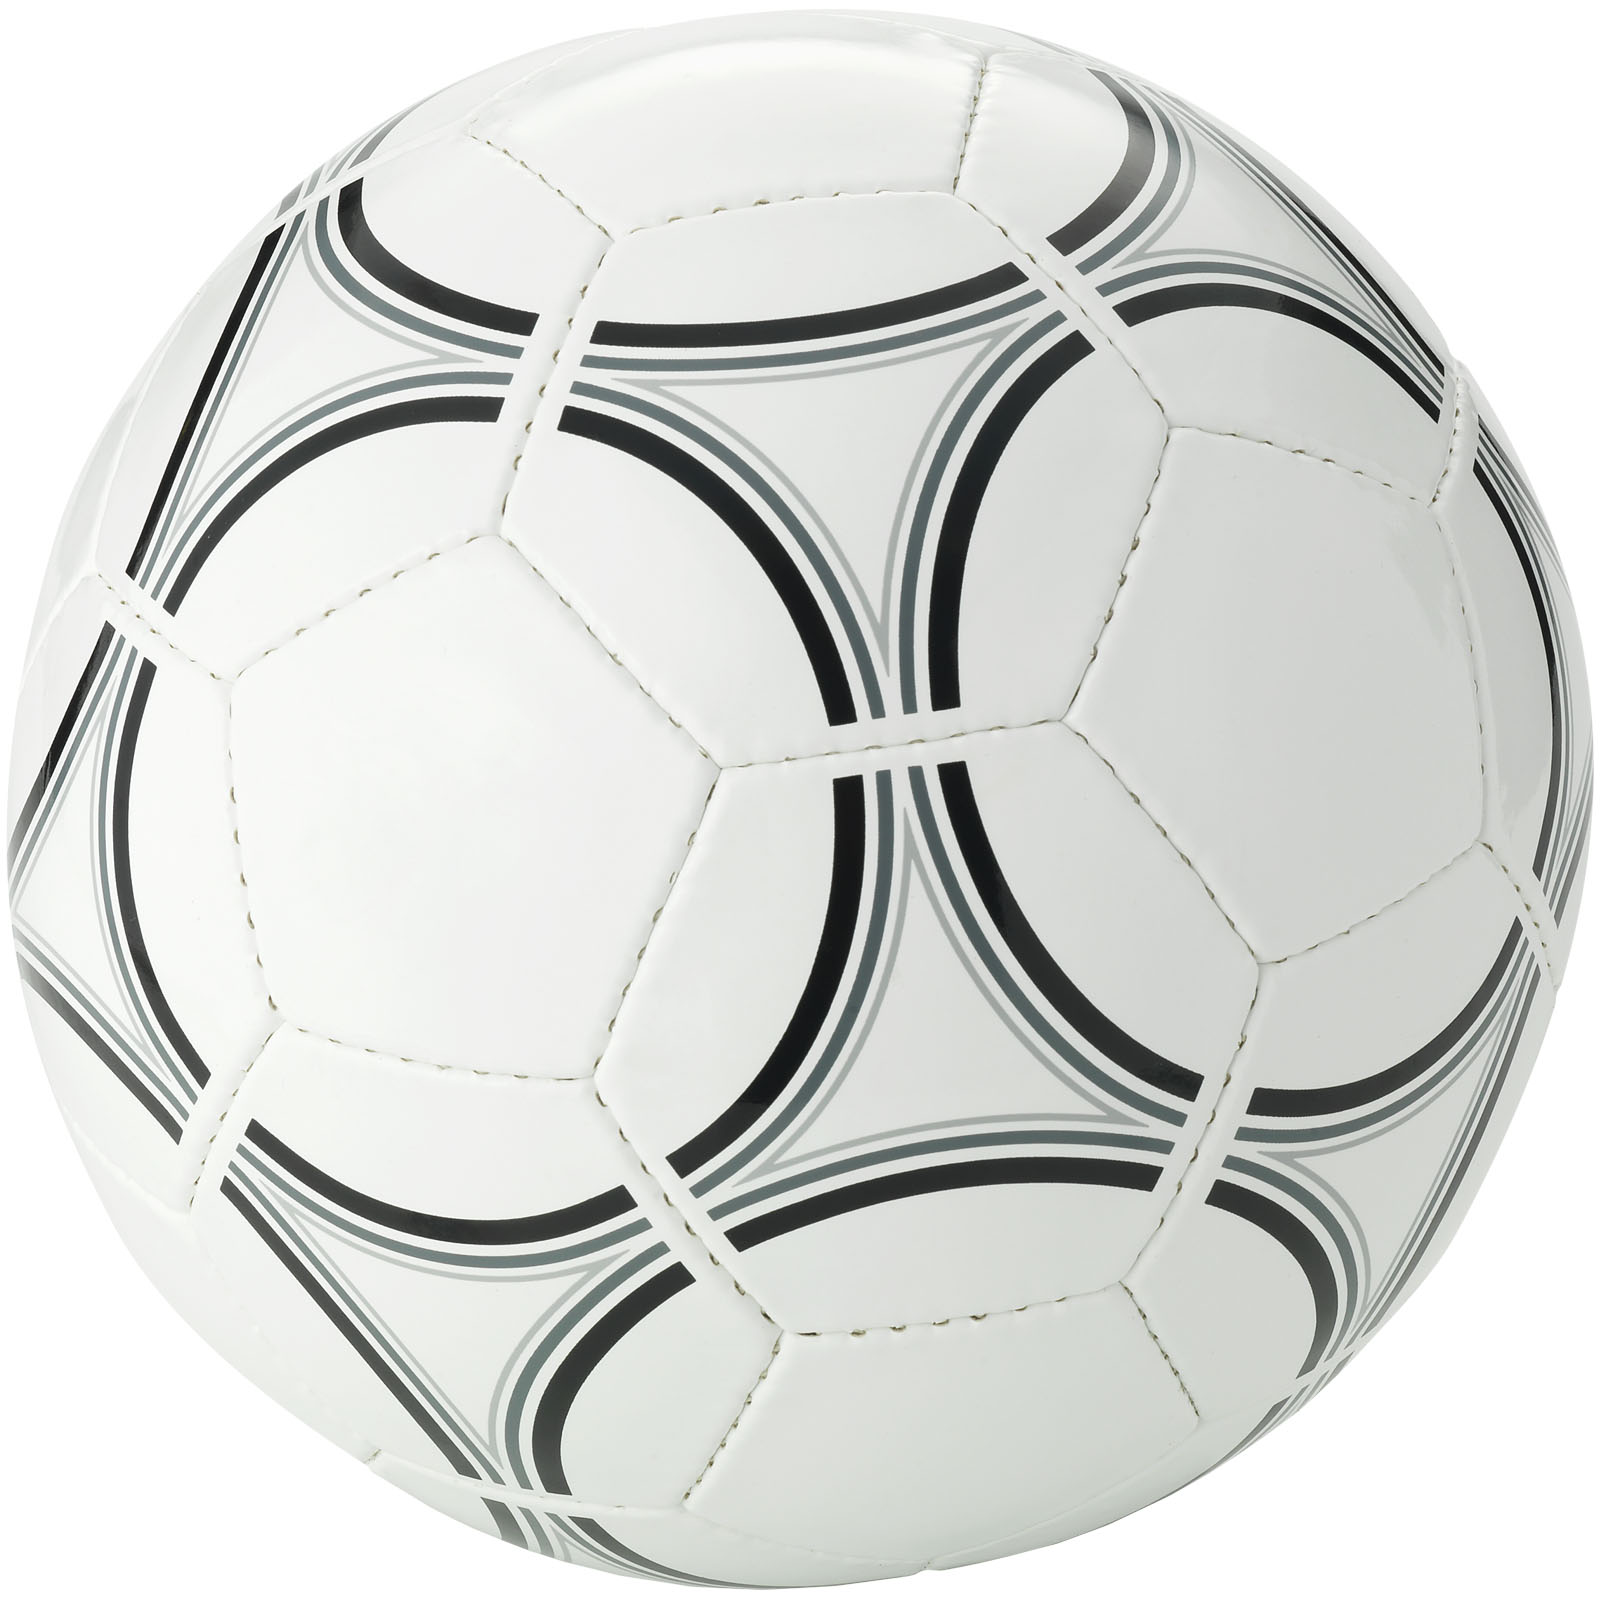 Ballon de football taille 5 personnalisé - Lilio - Zaprinta France